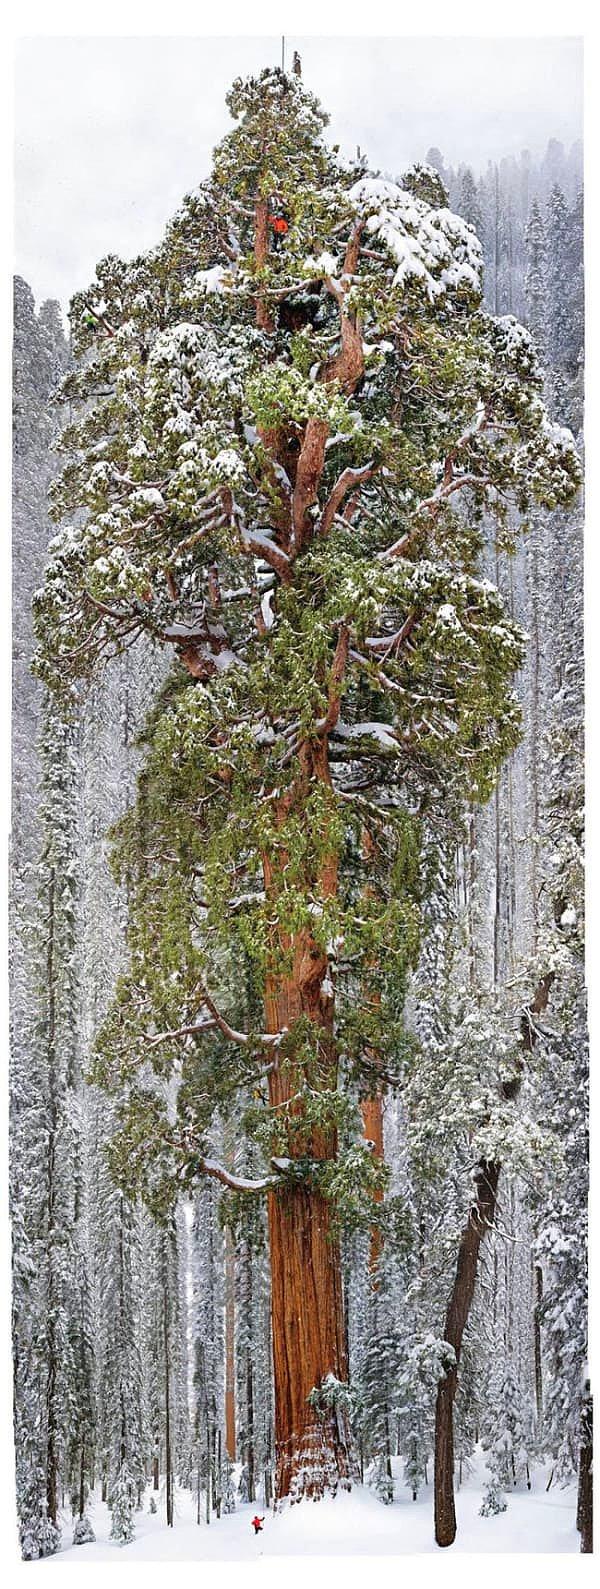 3. Dünyanın en büyük ikinci ağacı. Turuncu noktalara dikkatli bakın...